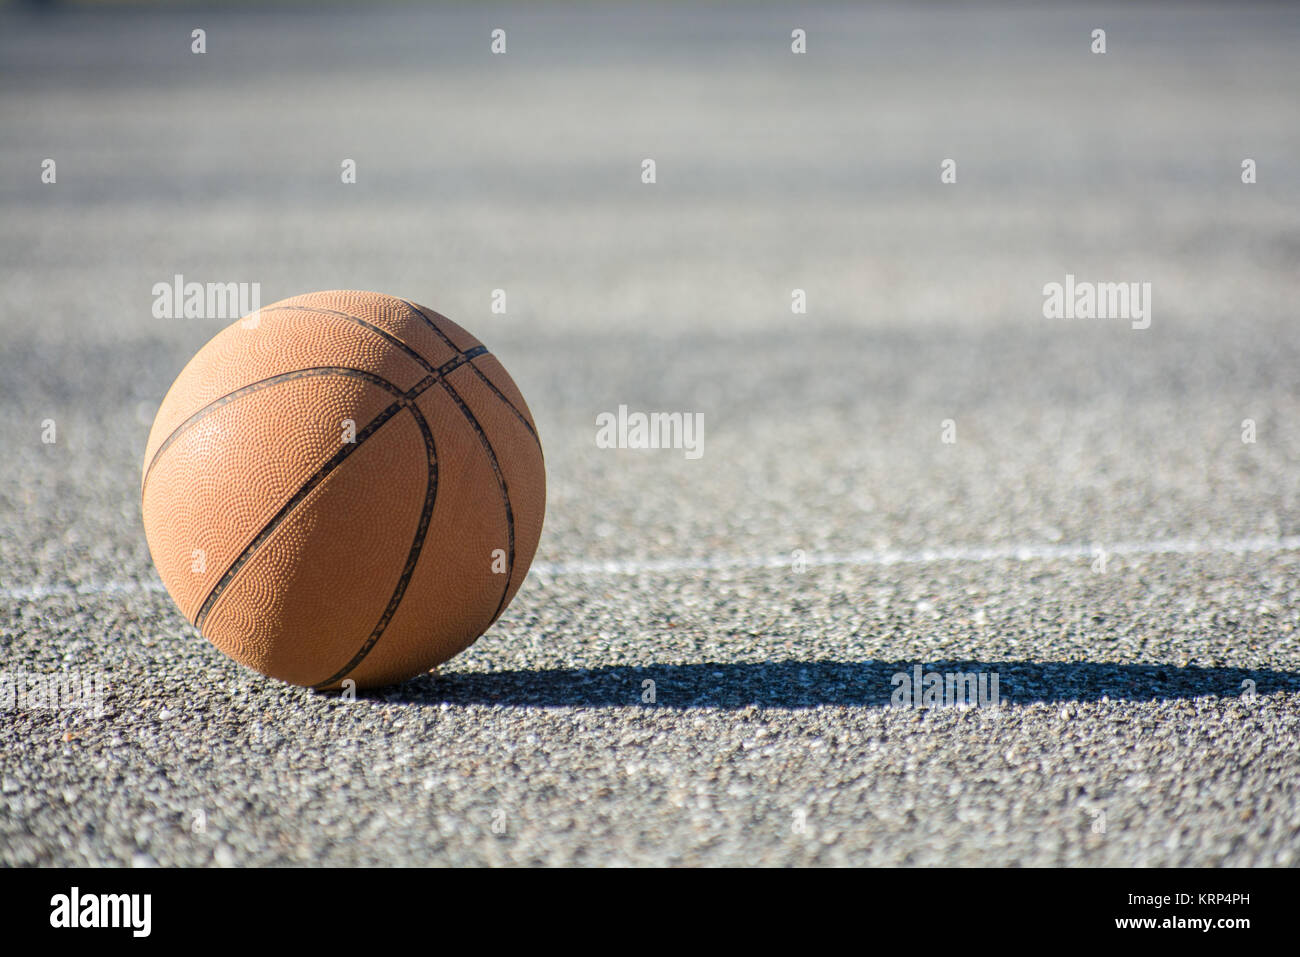 Ballon de basket-ball Basket-ball sur playgroung Banque D'Images